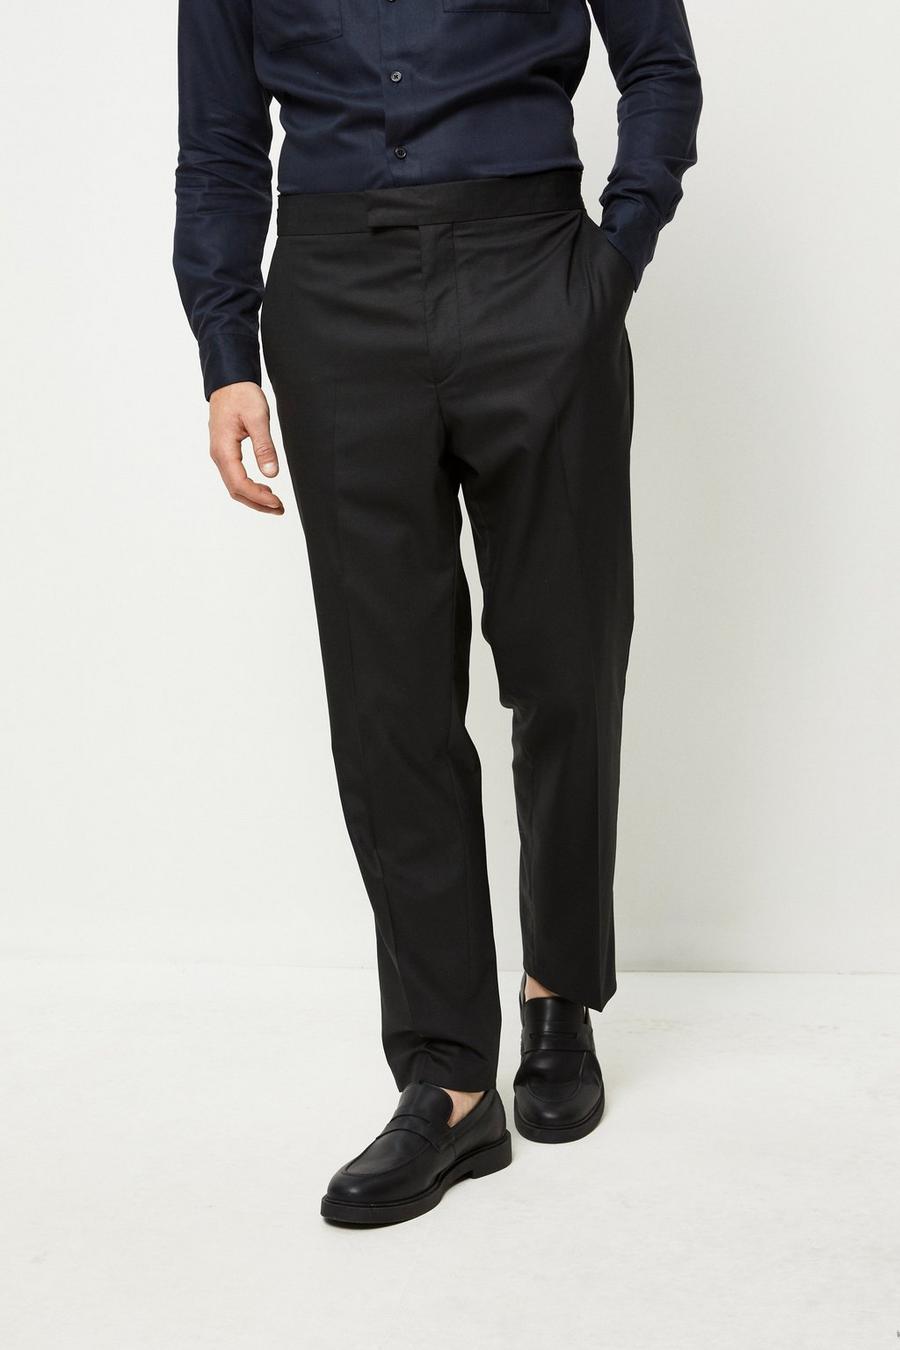 1904 Tailored Fit Black Suit Trouser